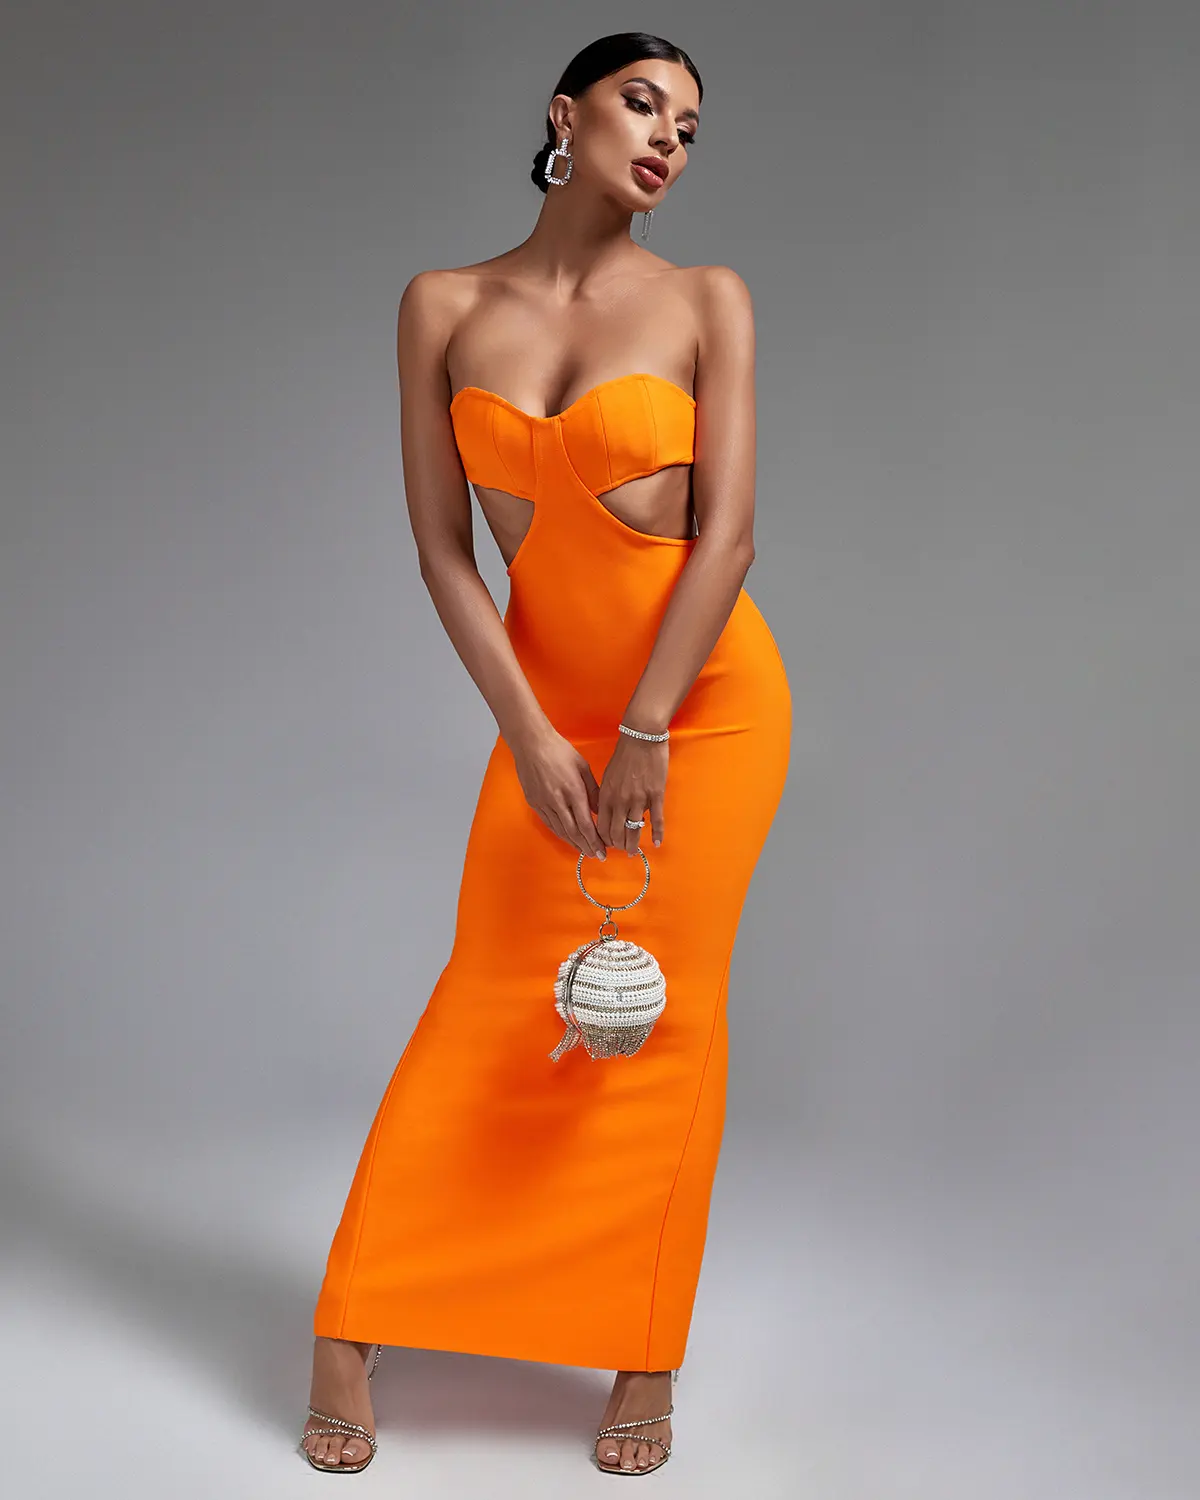 Oc strade Bekleidungs hersteller Benutzer definierte Abendkleider Aus geschnitten Tube Top Maxi kleid Ärmellose Orange Bandage Kleider Für Frauen